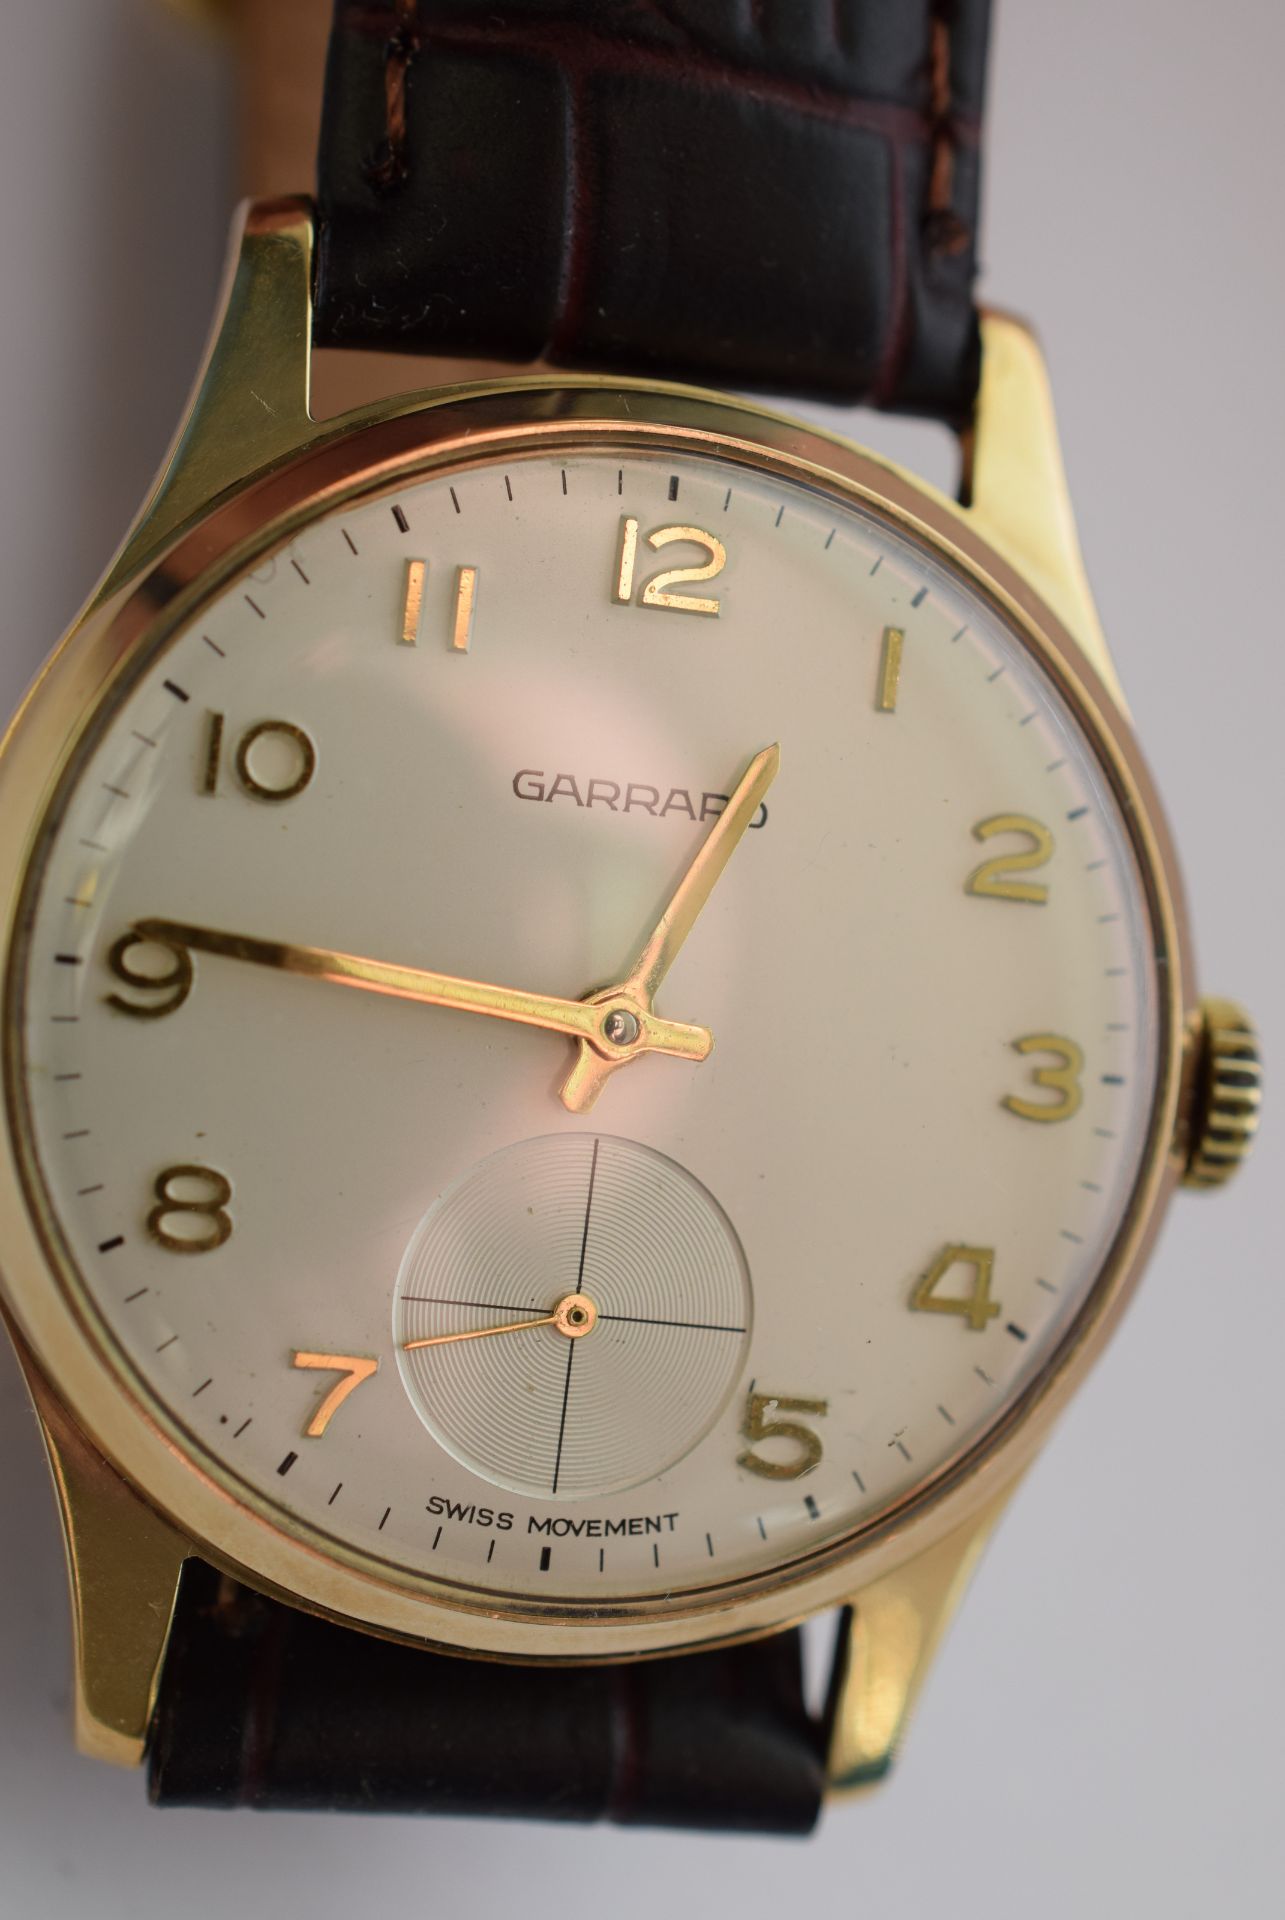 Garrard Gentleman's Manual Wind 9ct Gold Watch - Image 3 of 7